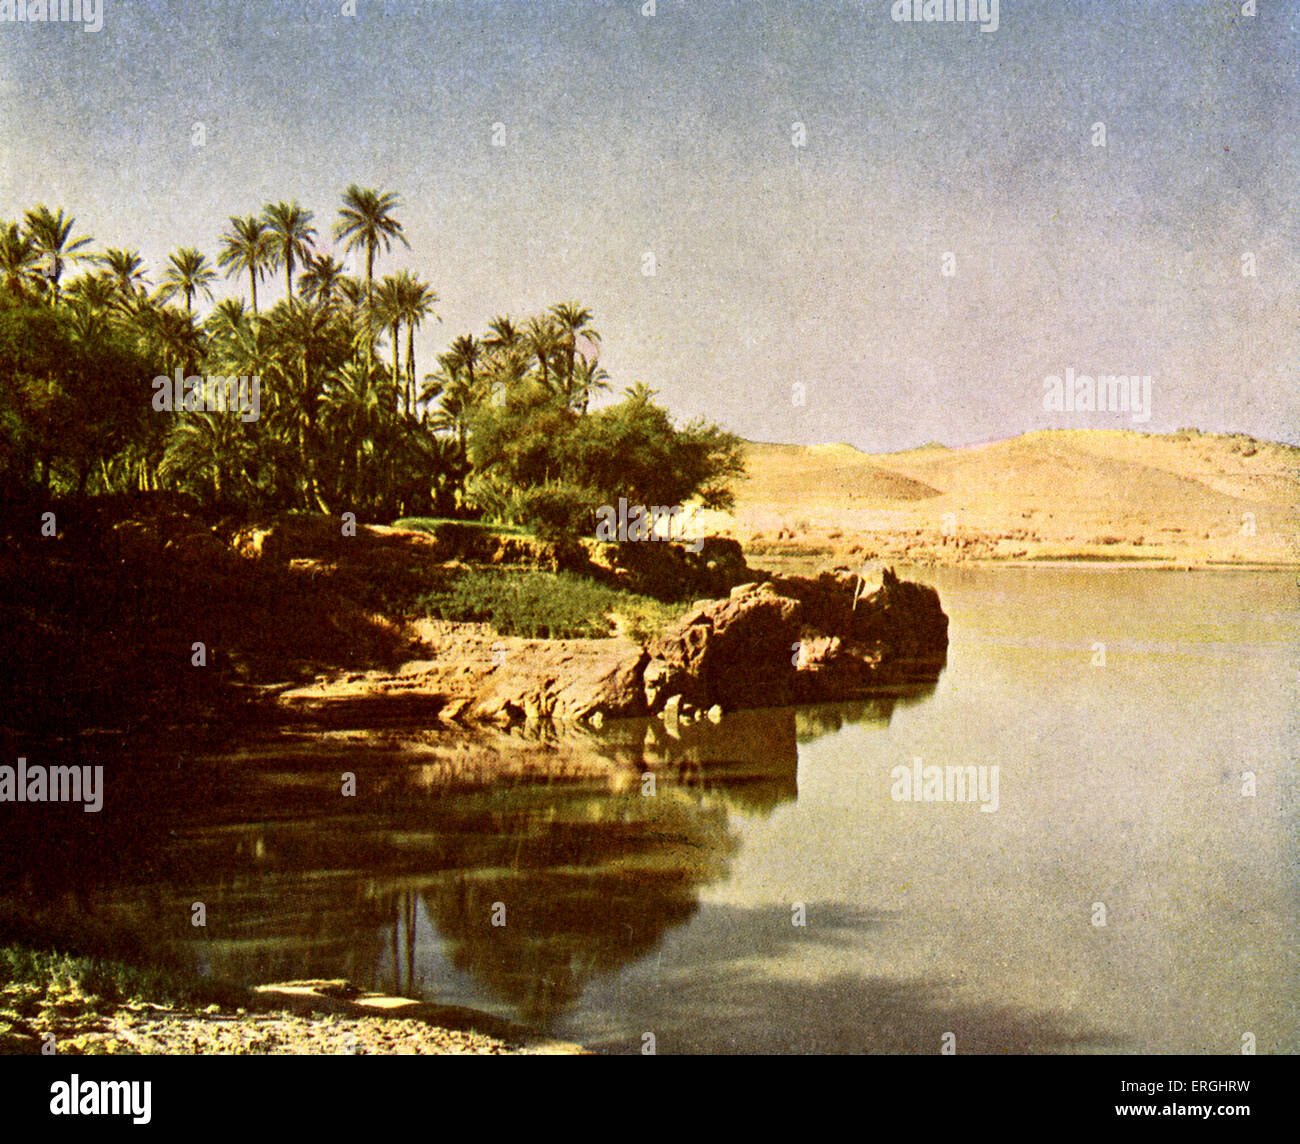 Éléphantine. Dans l'île du Nil dans le nord de la Nubie. Une partie de la ville moderne d'Assouan. L'Égypte. Photographie de l'ouvrage de 1923. Banque D'Images